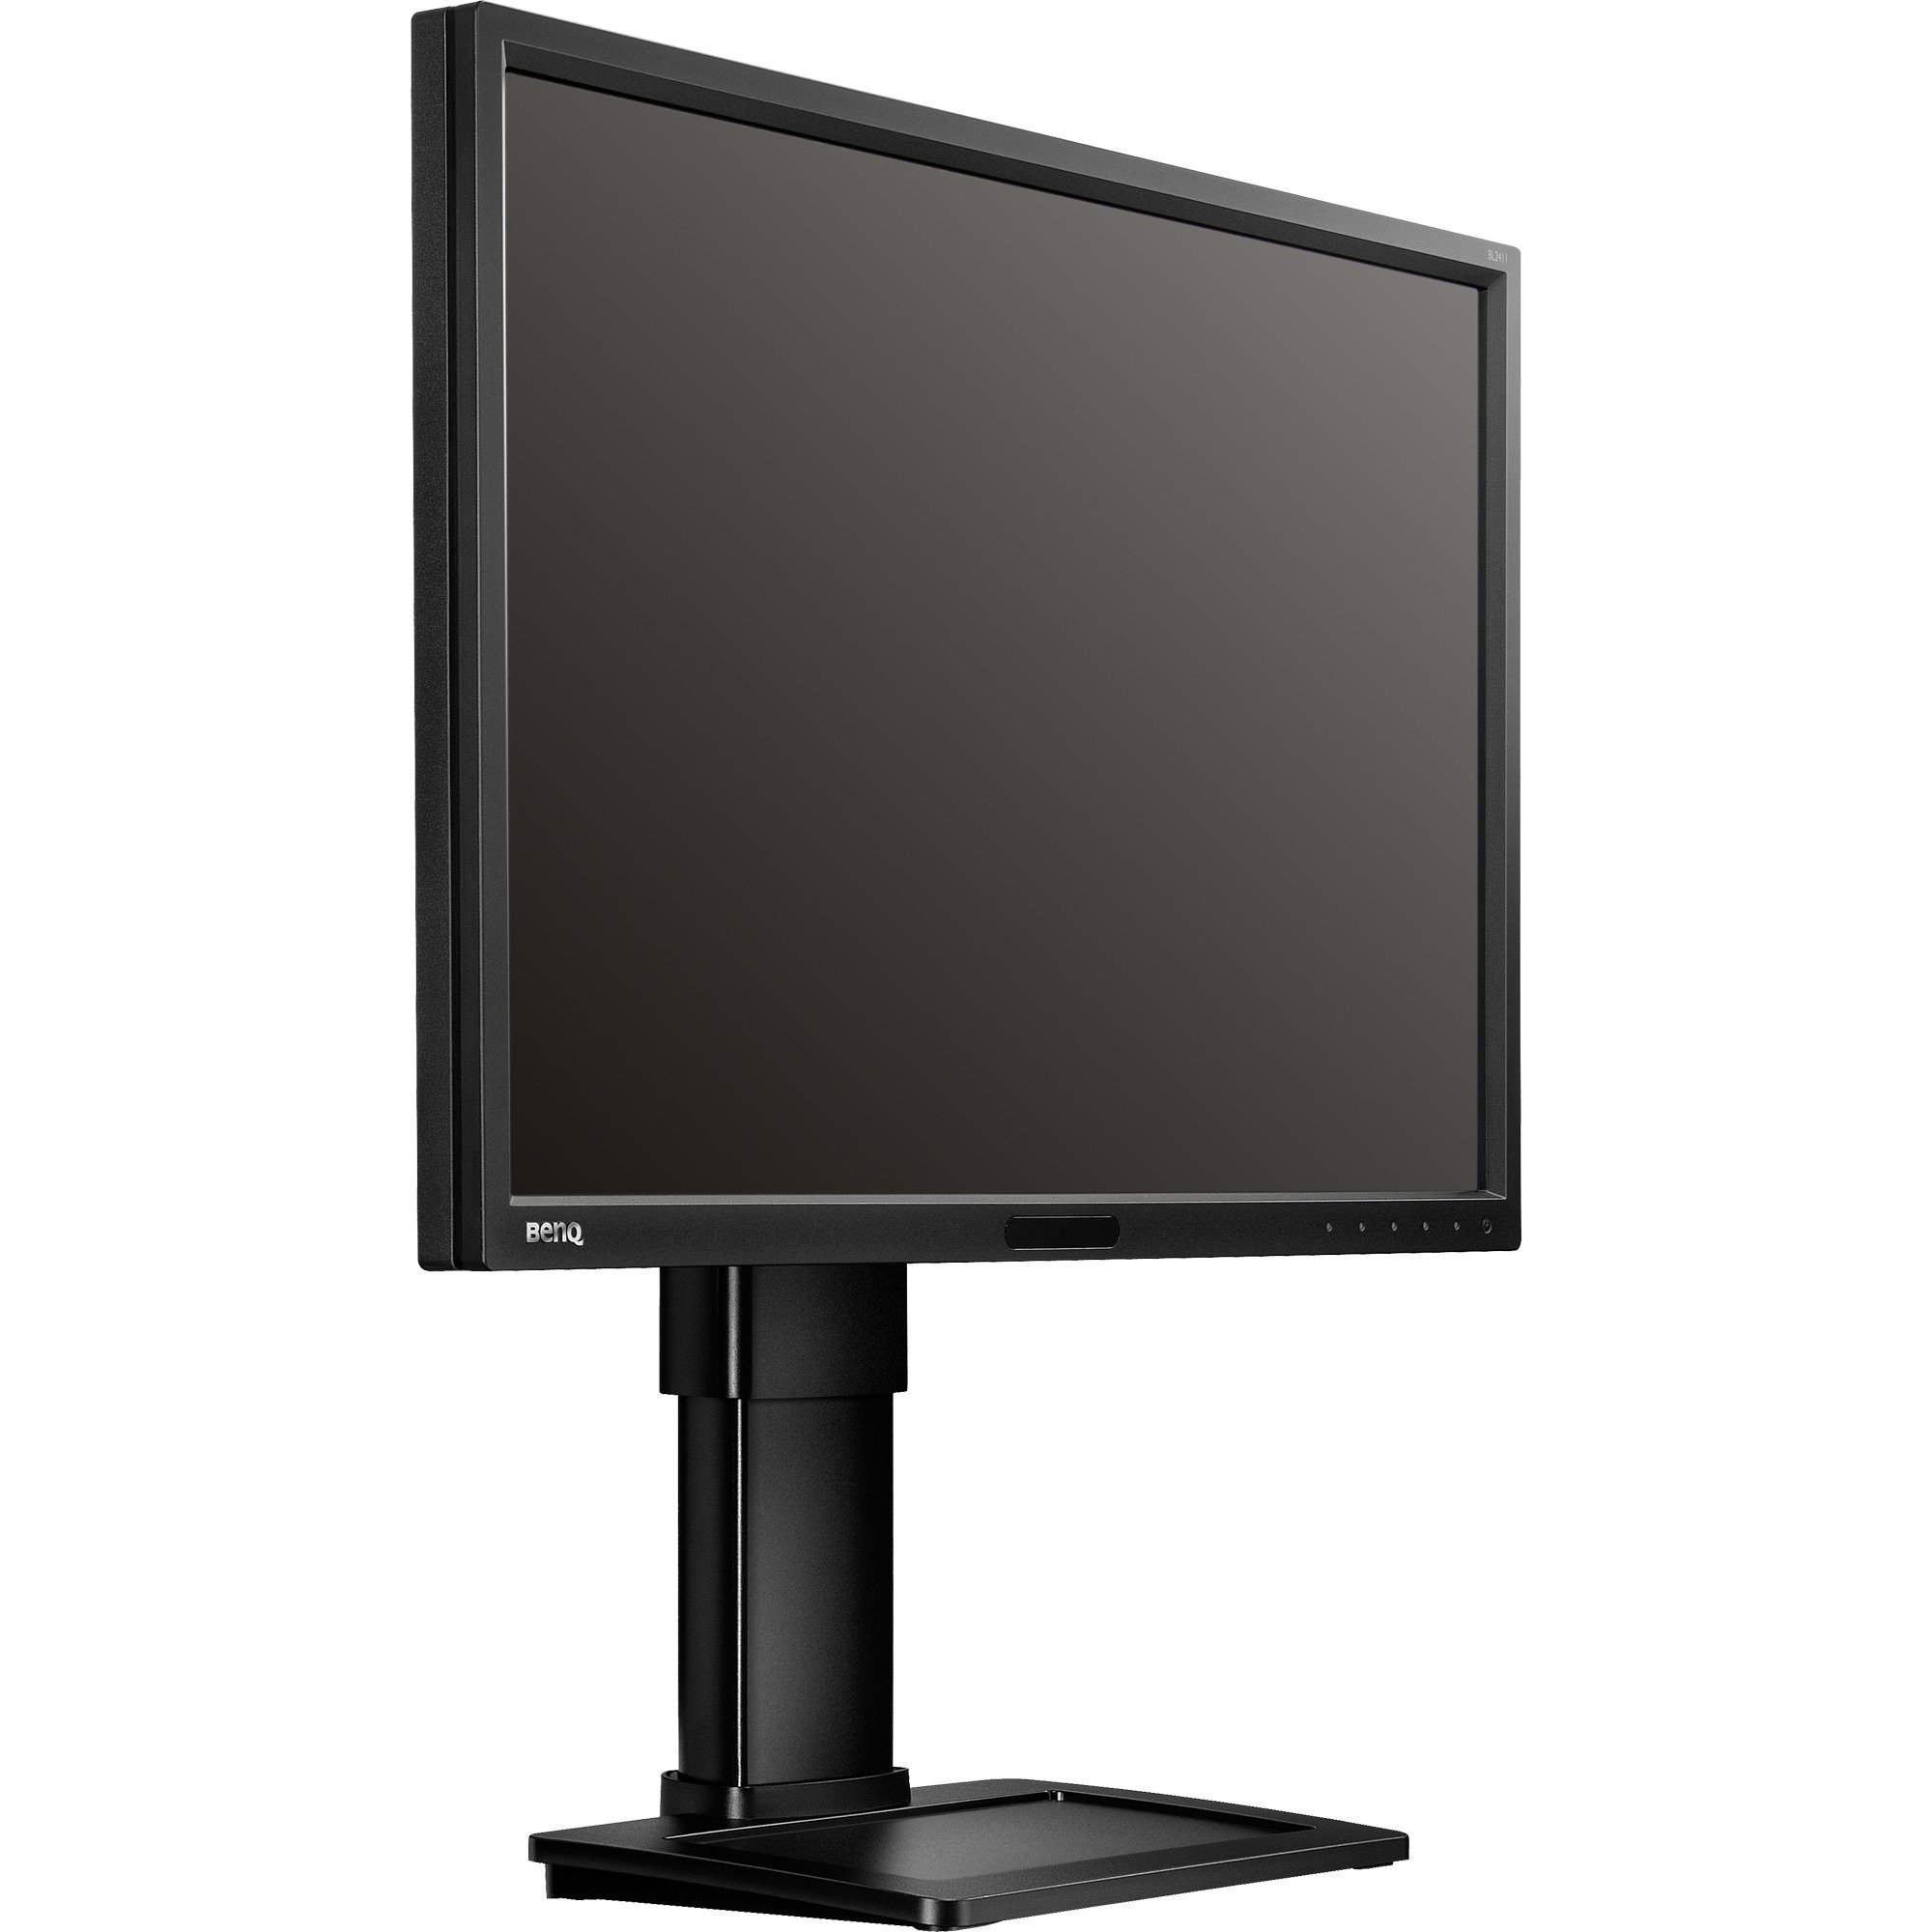 BL2411PT monitor komputerowy 61 cm (24") WUXGA LED (Dioda elektroluminescencyjna) Czarny, LED monitor